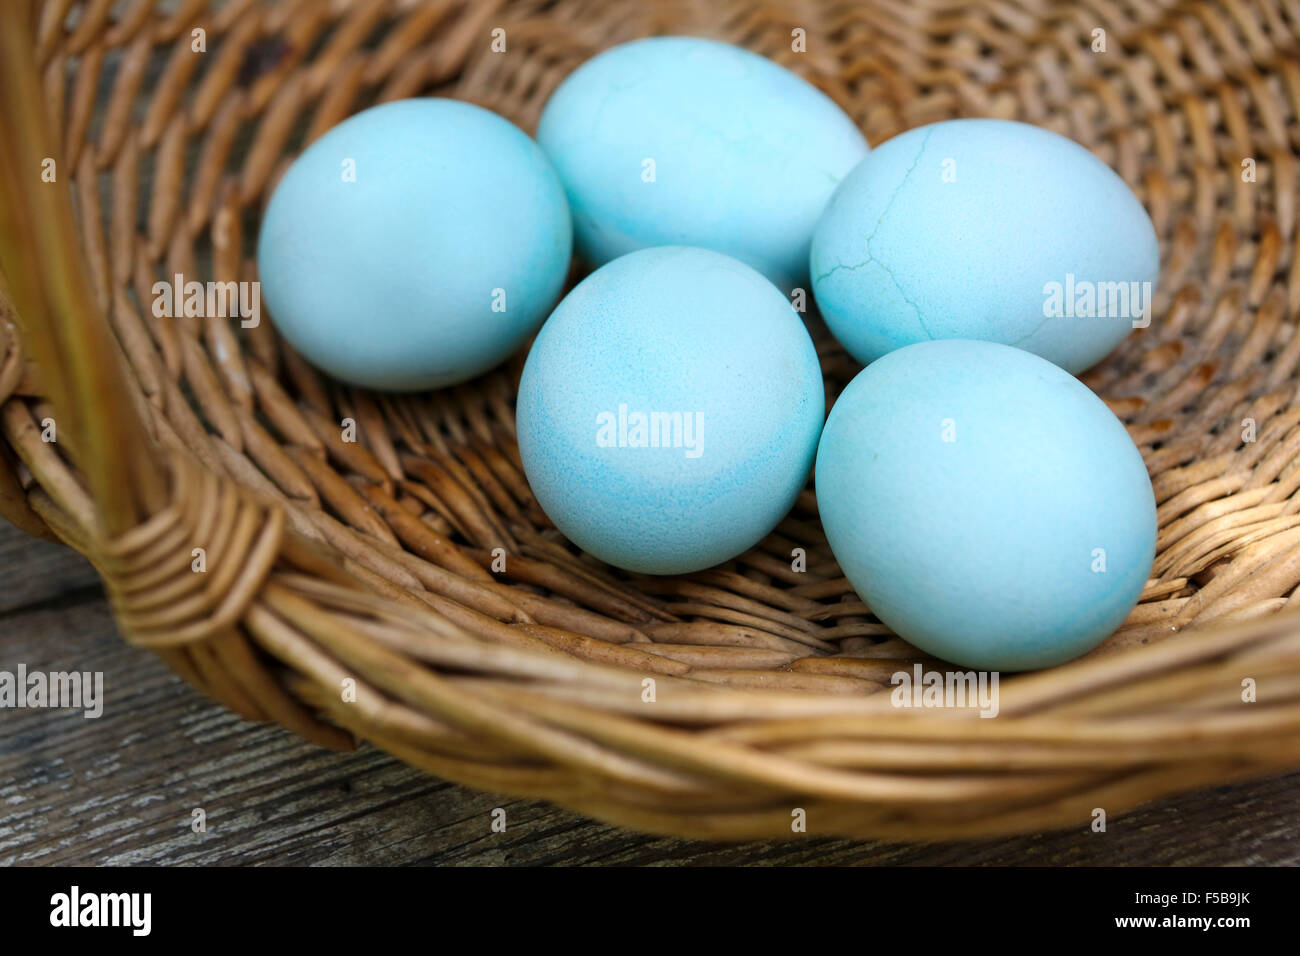 Blue huevos duros un buen comienzo para los huevos de Pascua (teñidos con remolacha) Esta imagen tiene una restricción para el otorgamiento de licencias en Israel Foto de stock